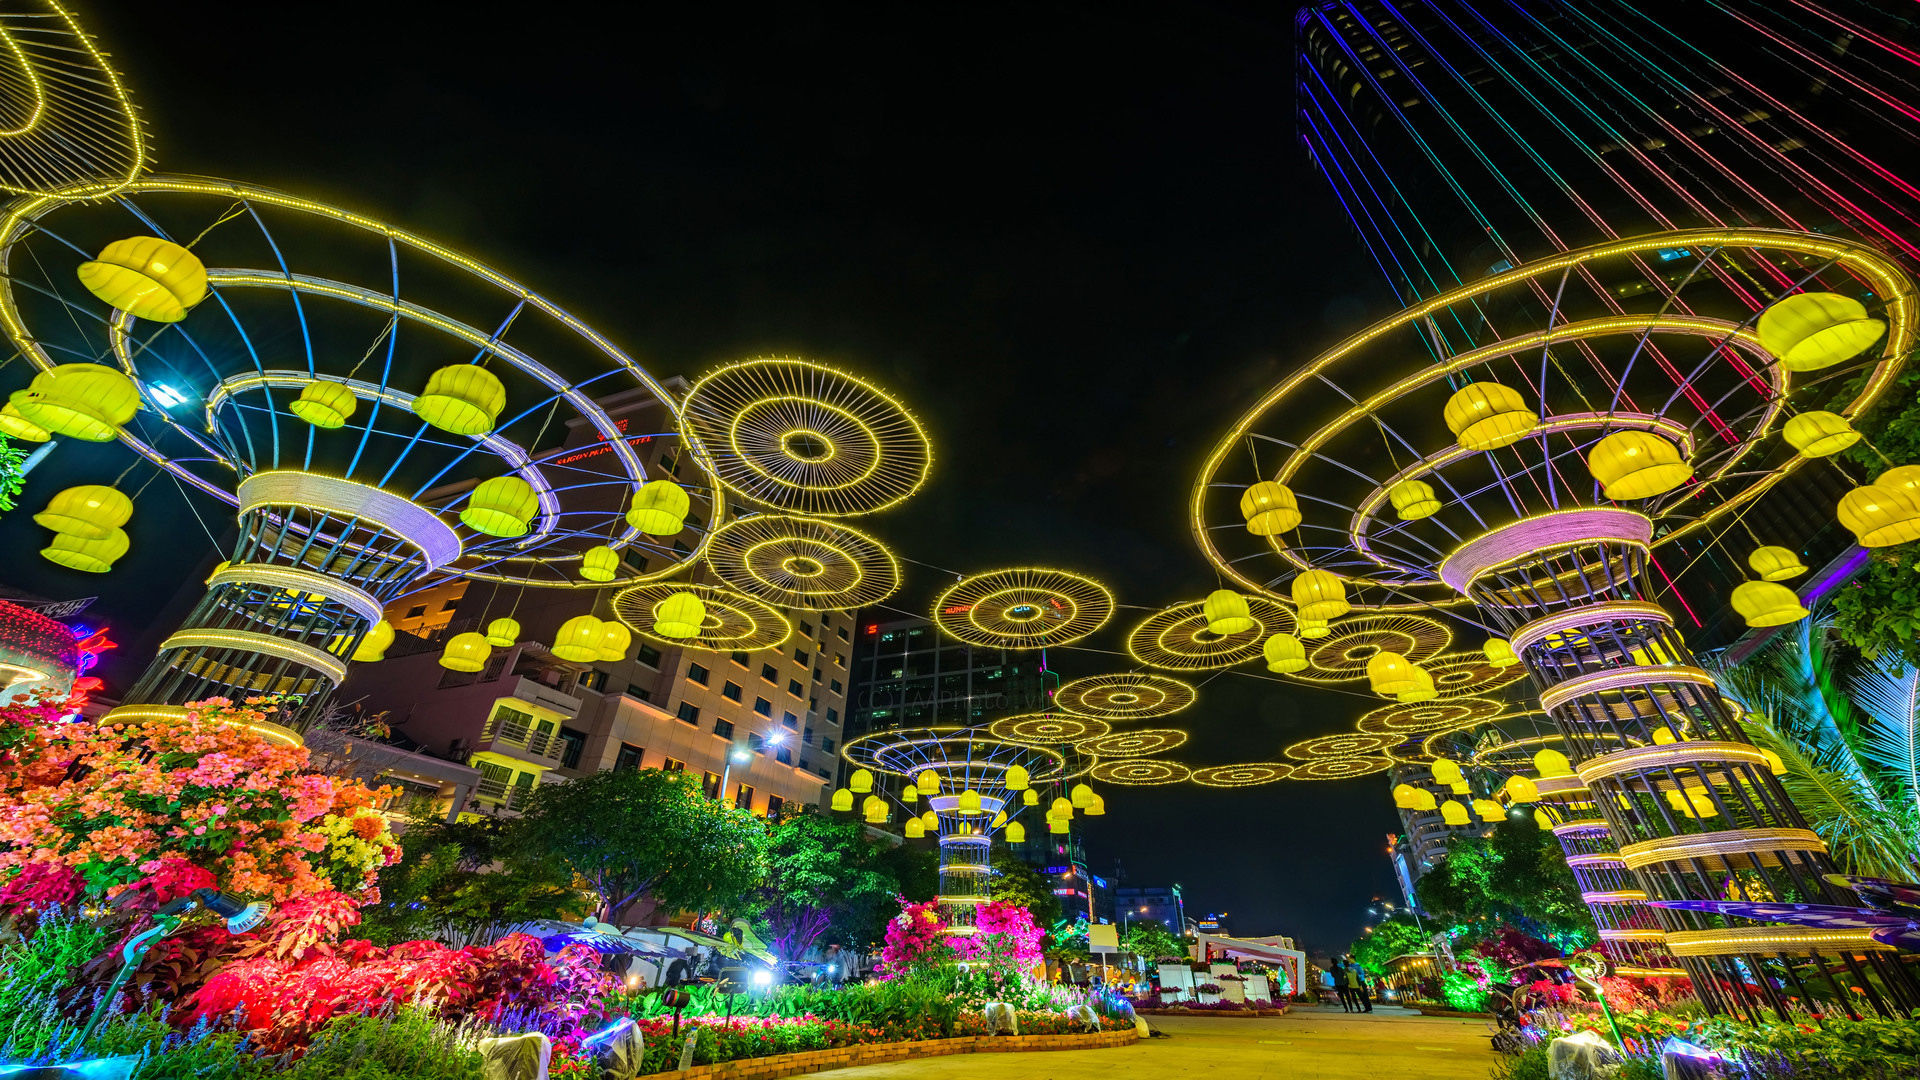 Thành phố Hồ Chí Minh trở thành vùng xanh, du khách đi chơi ở đâu dịp Tết Nhâm Dần 2022 - Ảnh 5.